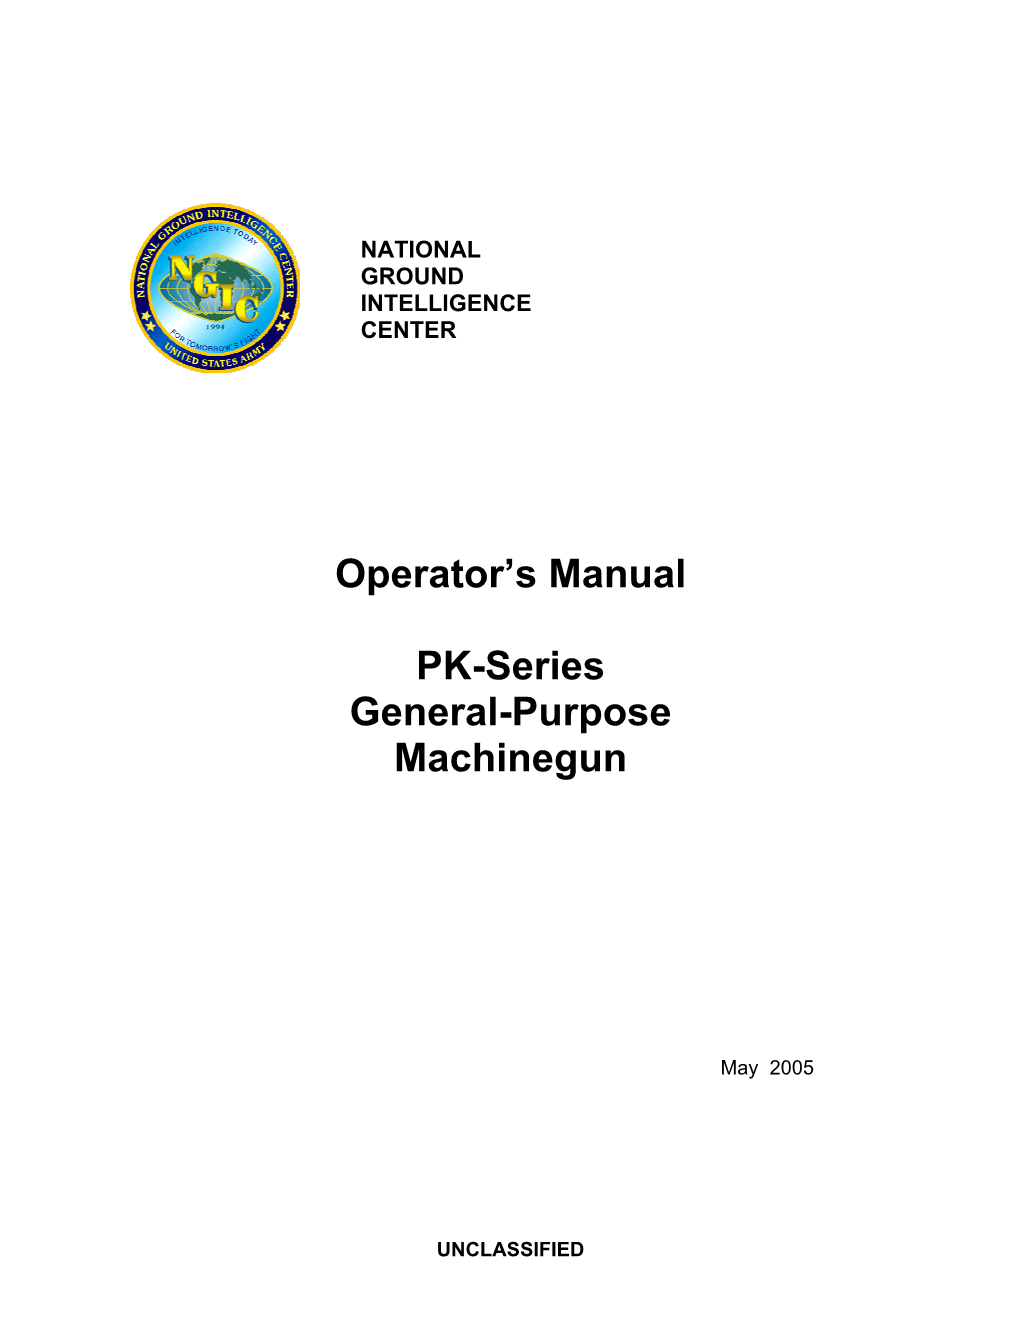 Operator's Manual PK-Series General-Purpose Machinegun